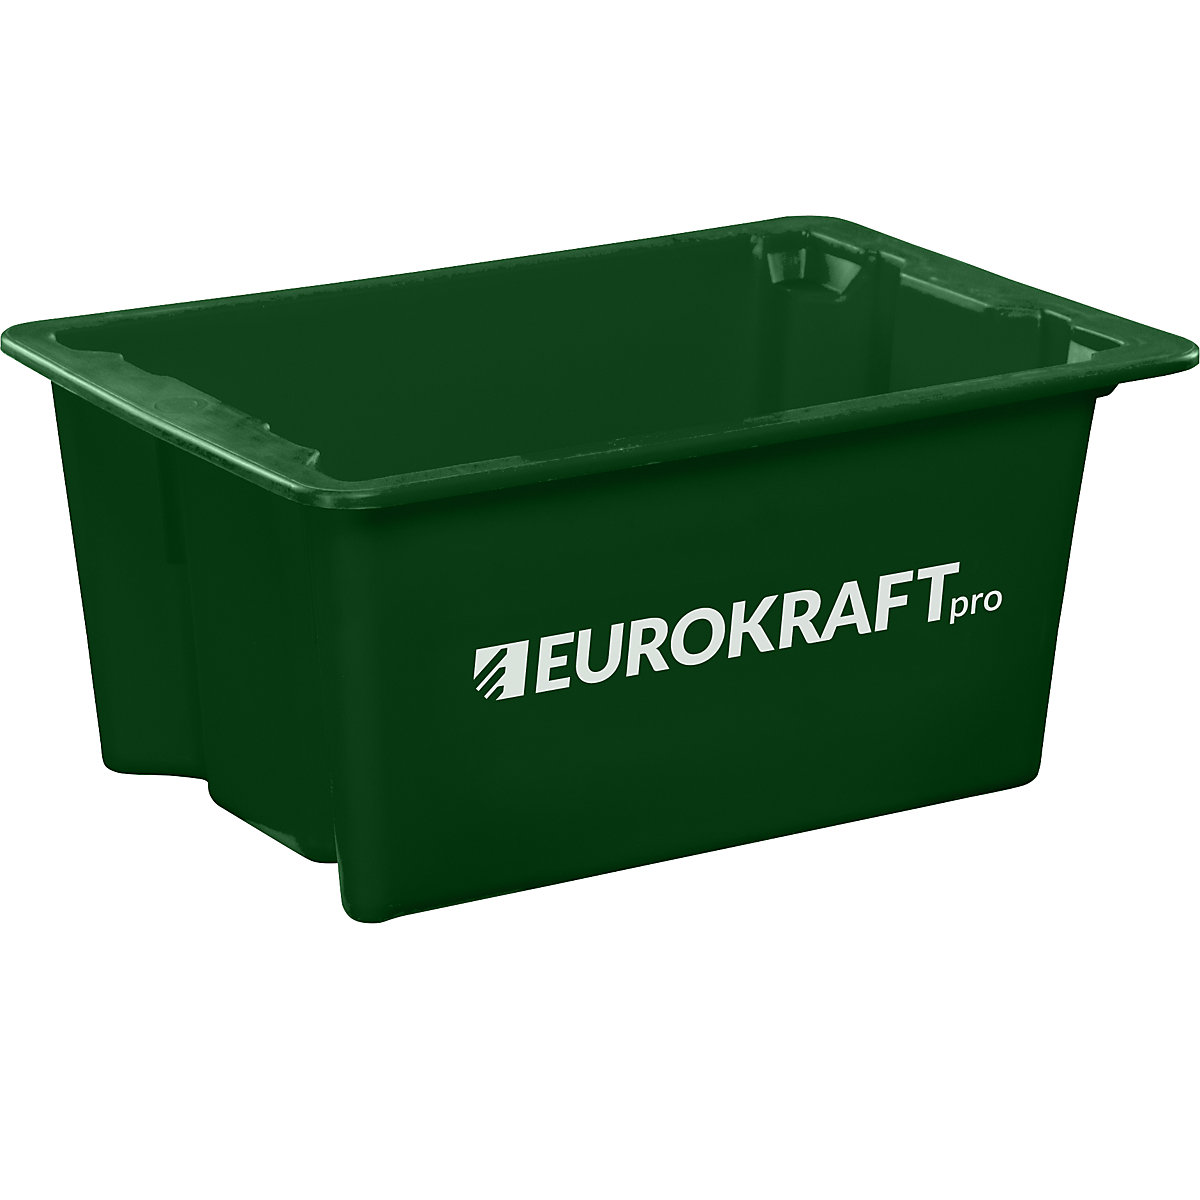 EUROKRAFTpro – Obrotowy pojemnik do ustawiania w stos z polipropylenu dopuszczonego do kontaktu z żywnością, poj. 6 l, opak. 4 szt., ścianki i dno zamknięte, zielone